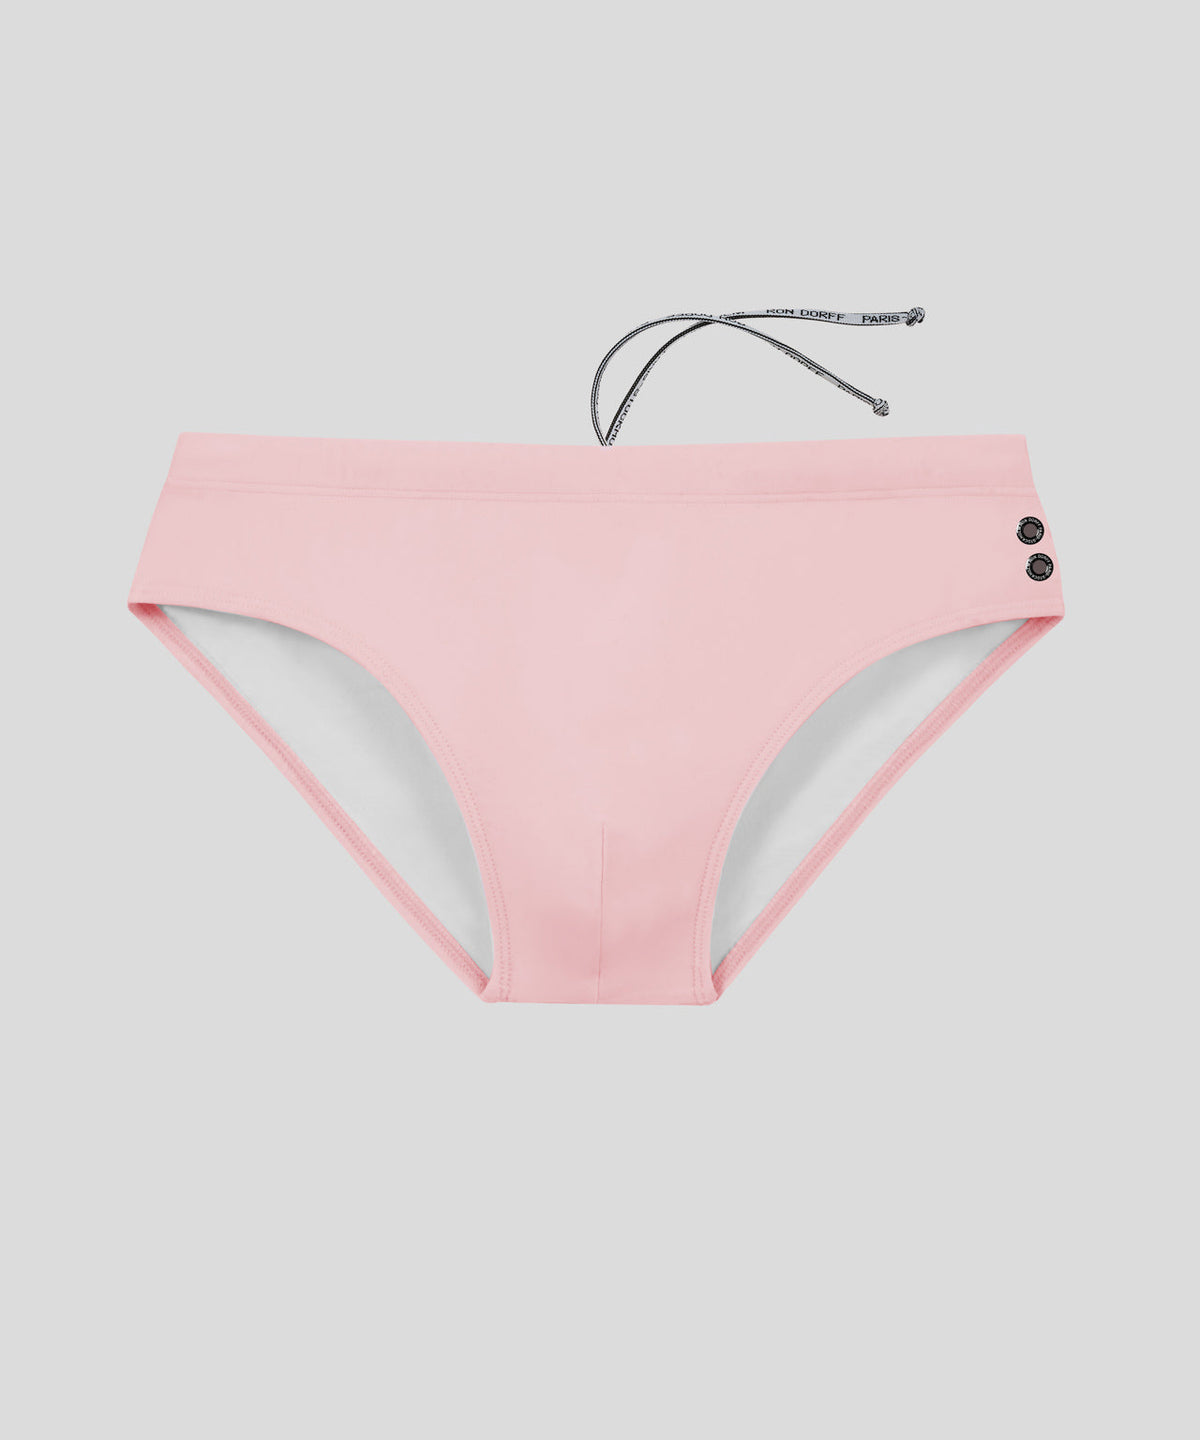 Swim Briefs: Pastel Pink